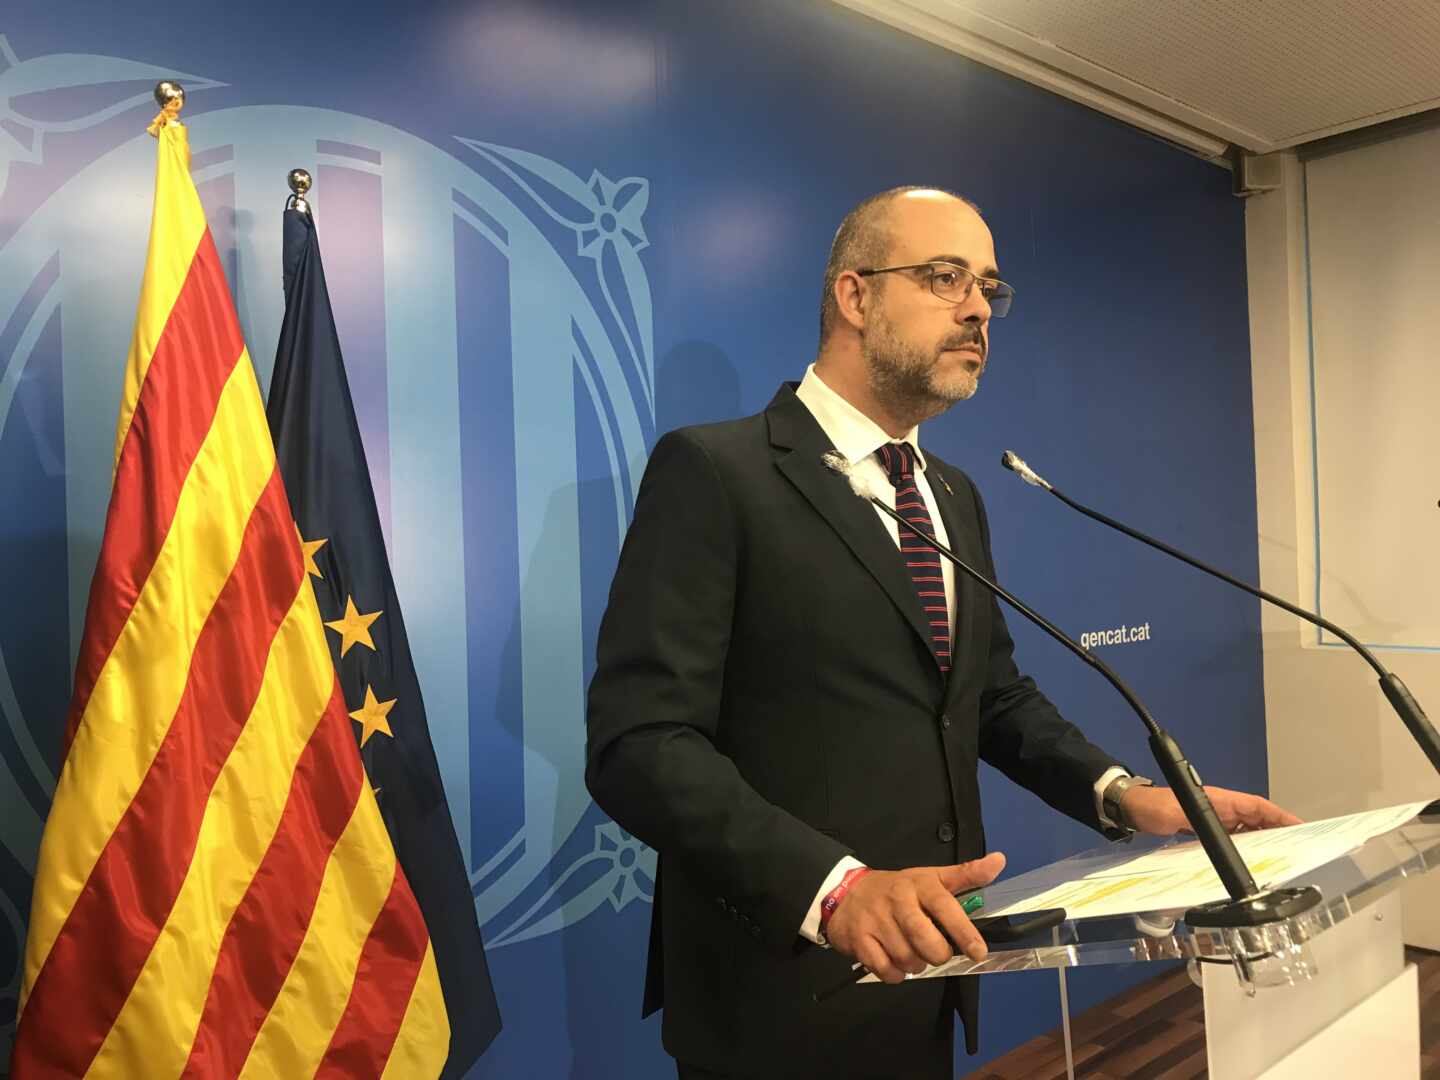 La Generalitat denuncia mala fe en la entrega de 1.714.000 mascarillas por parte del Gobierno